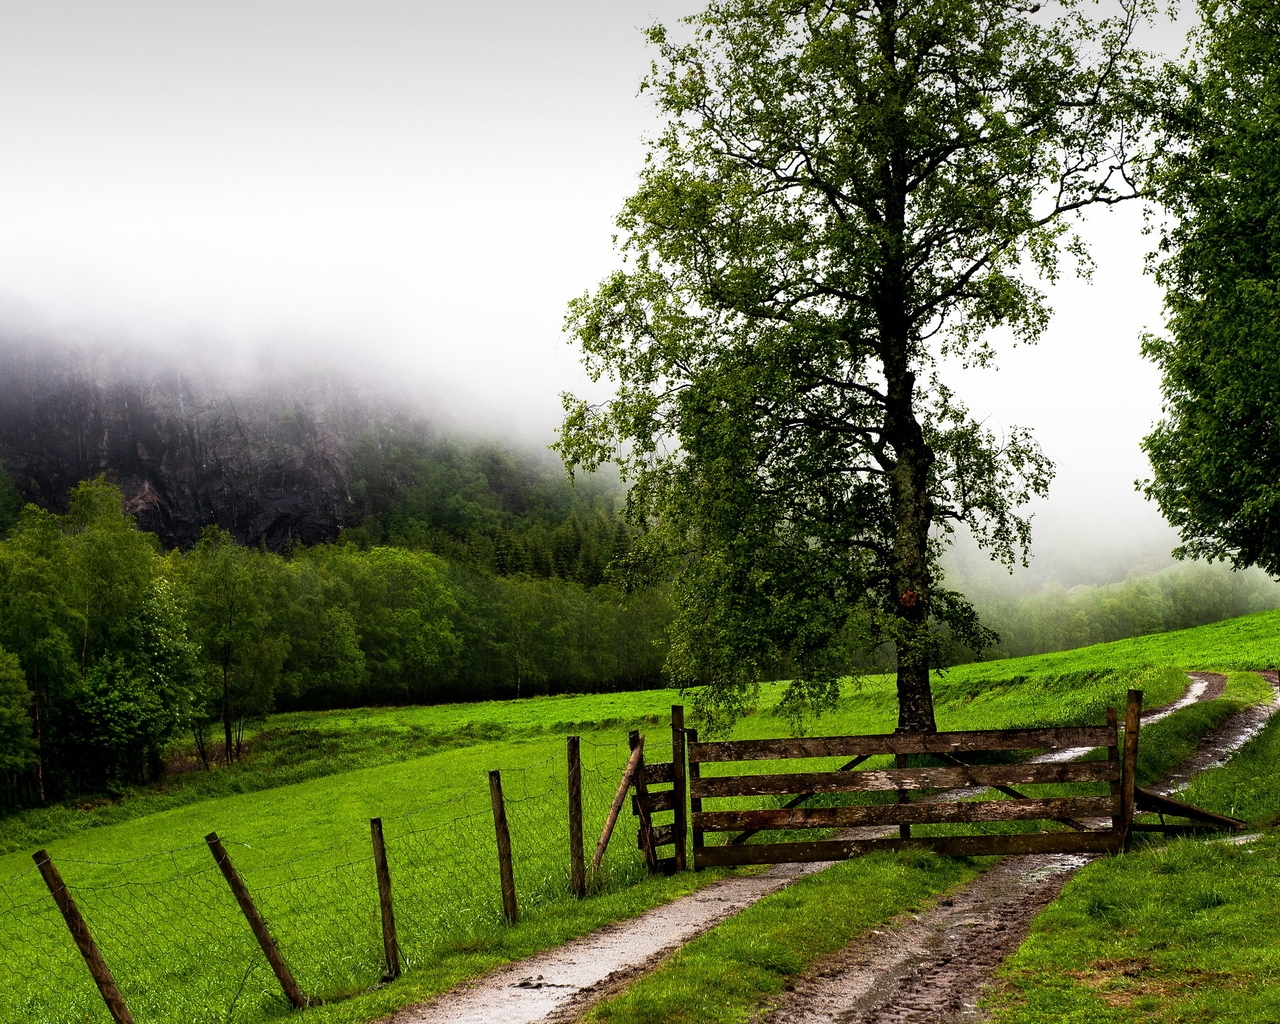 Картинка: Пейзаж, дорога, забор, ворота, поле, деревья, горы, туман, зелень